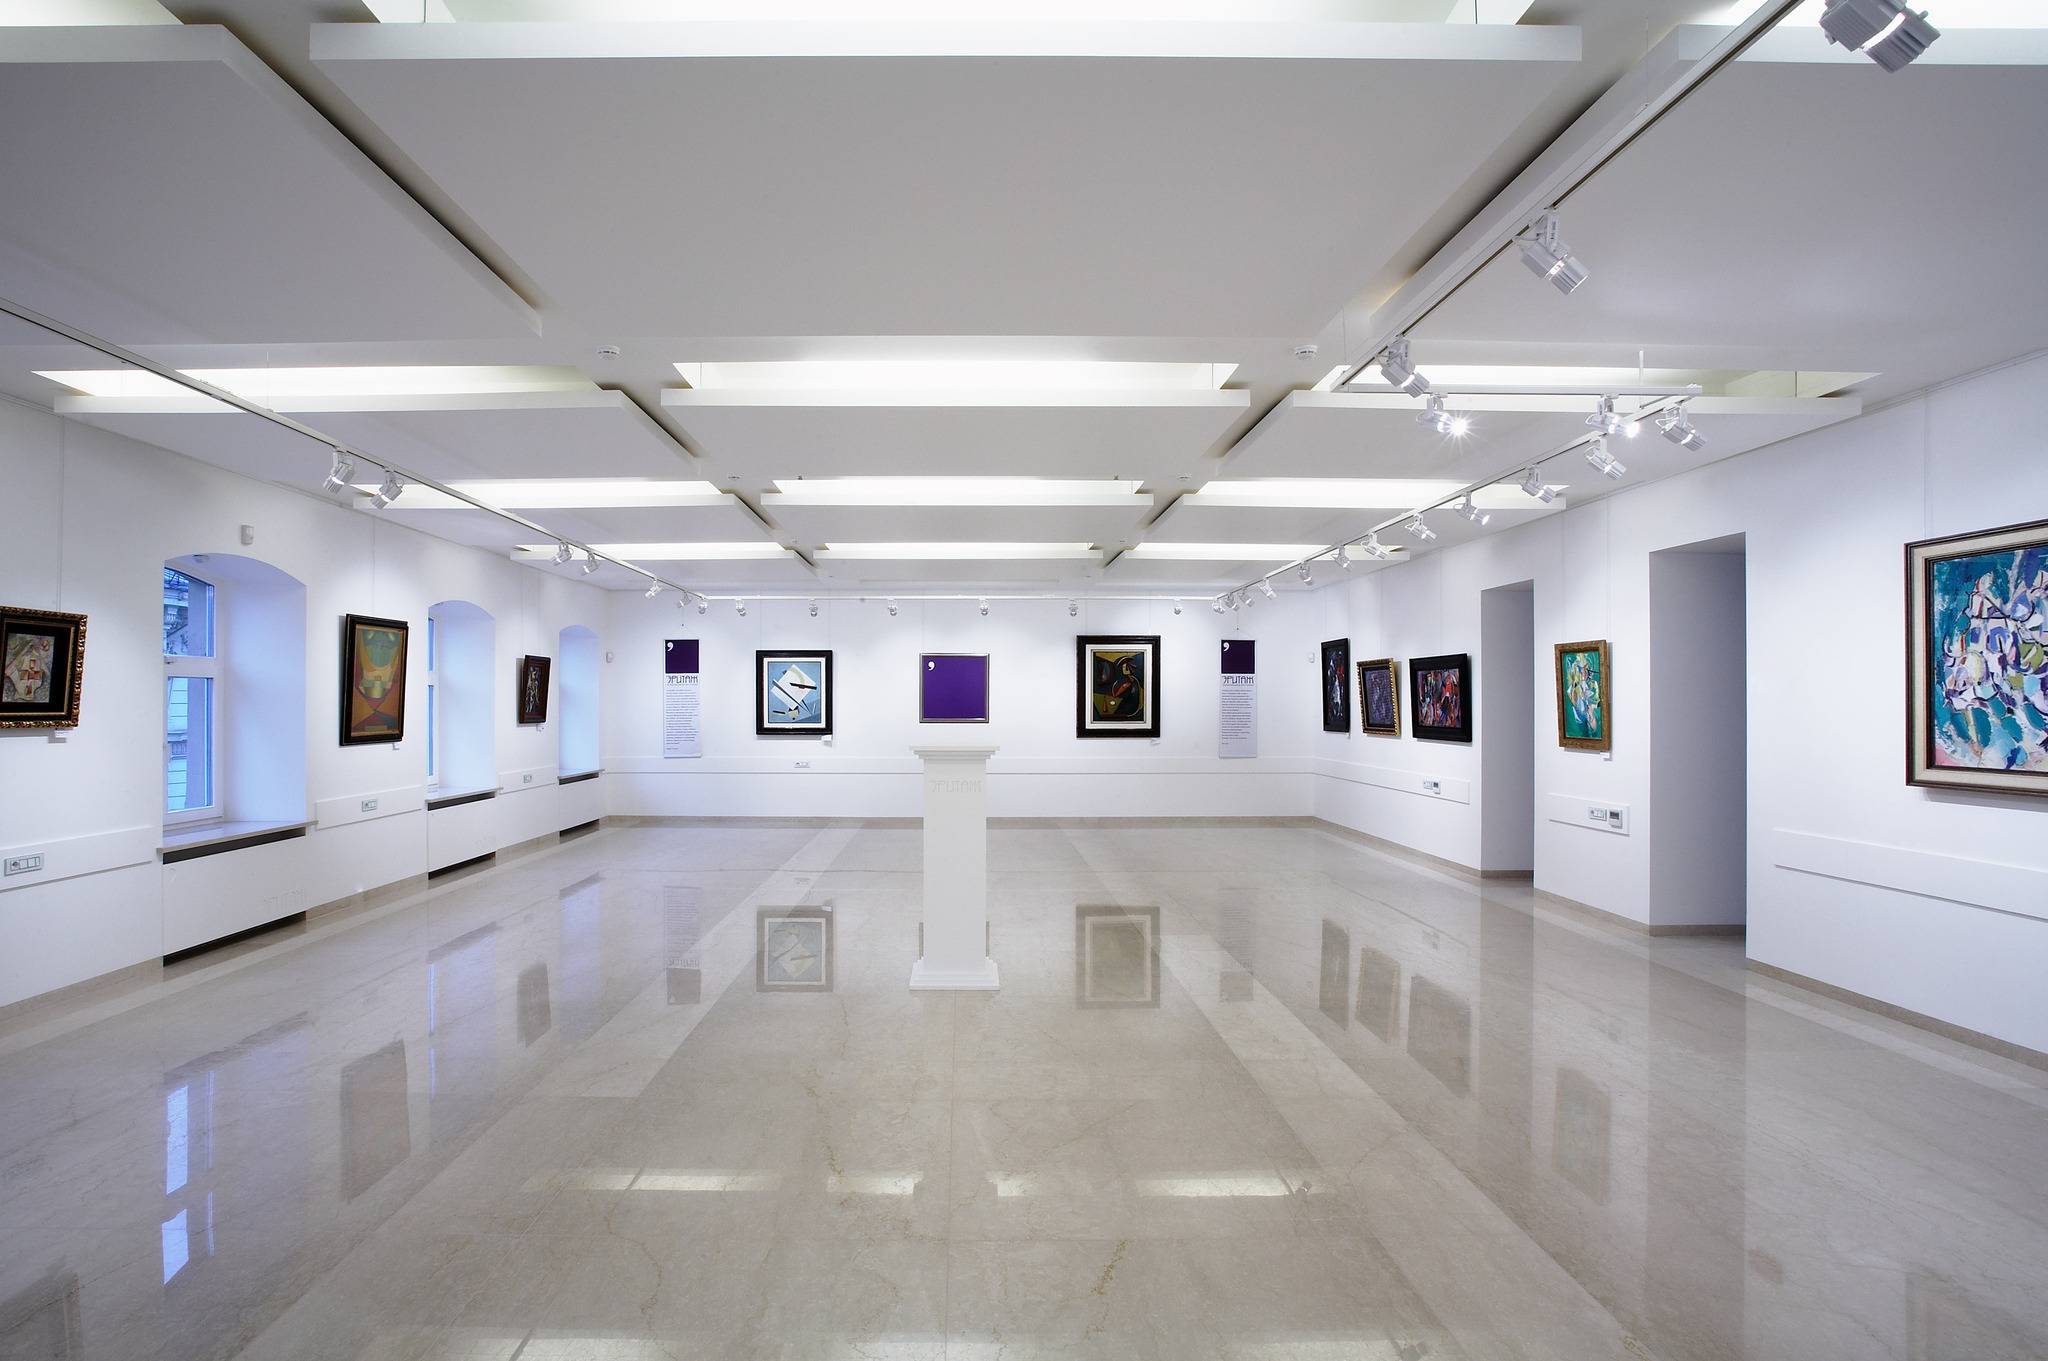 Saatchi gallery